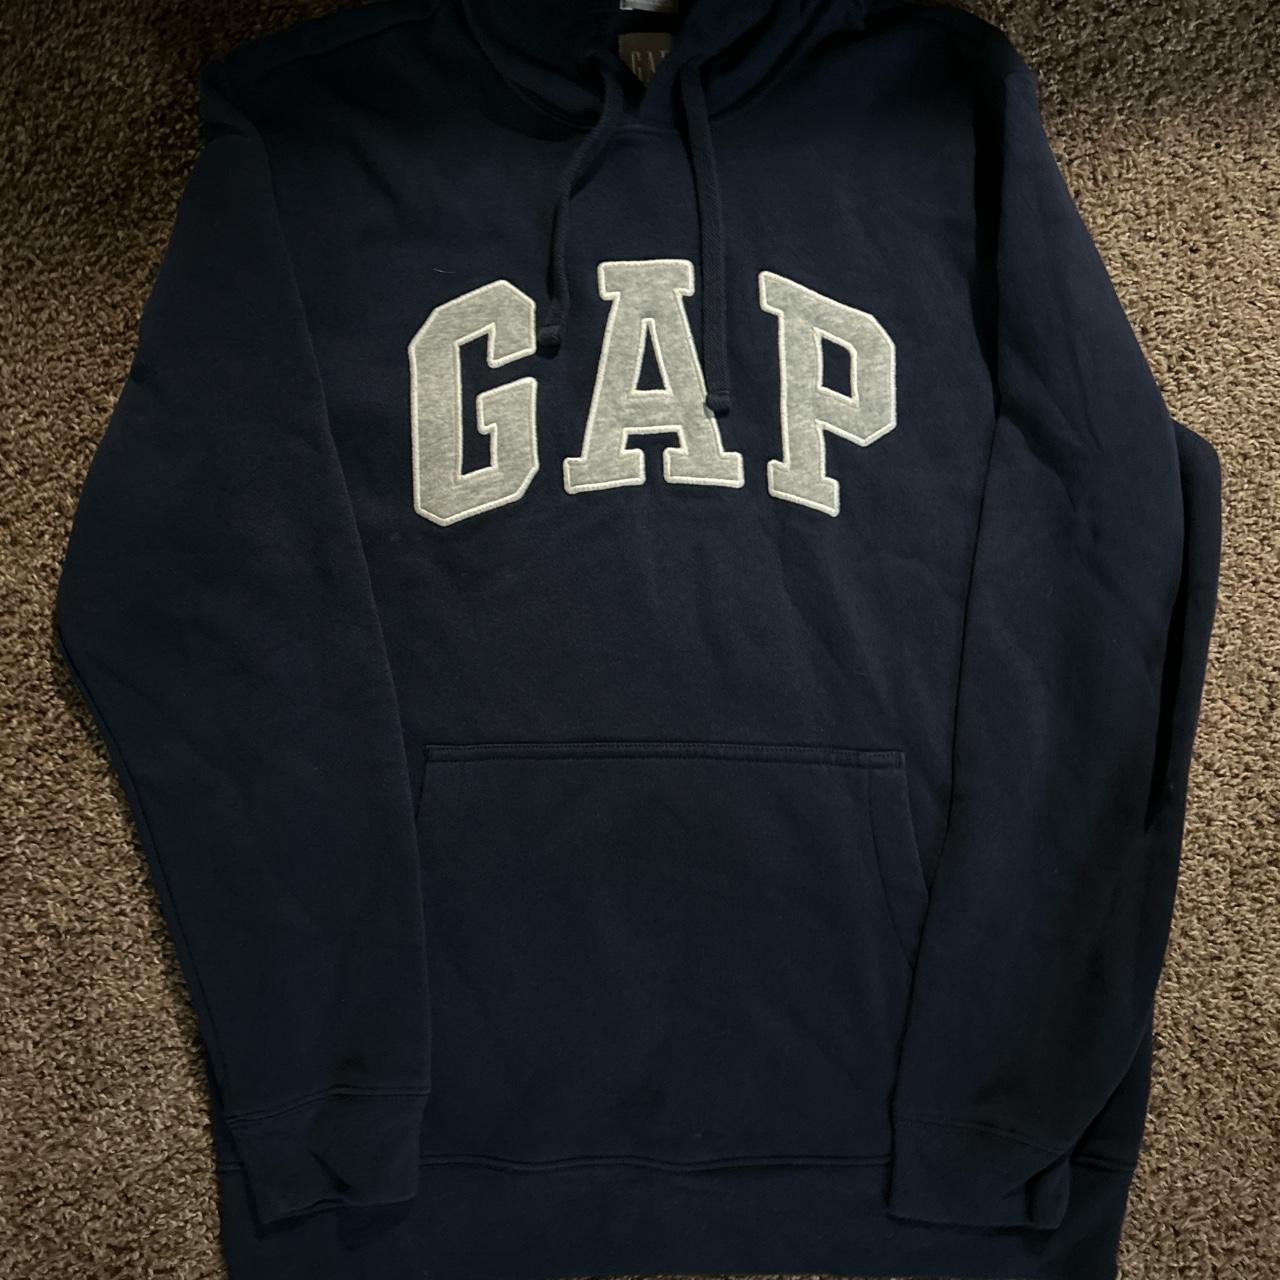 blue nd grey gap hoodie unworn no flaws sz small... - Depop